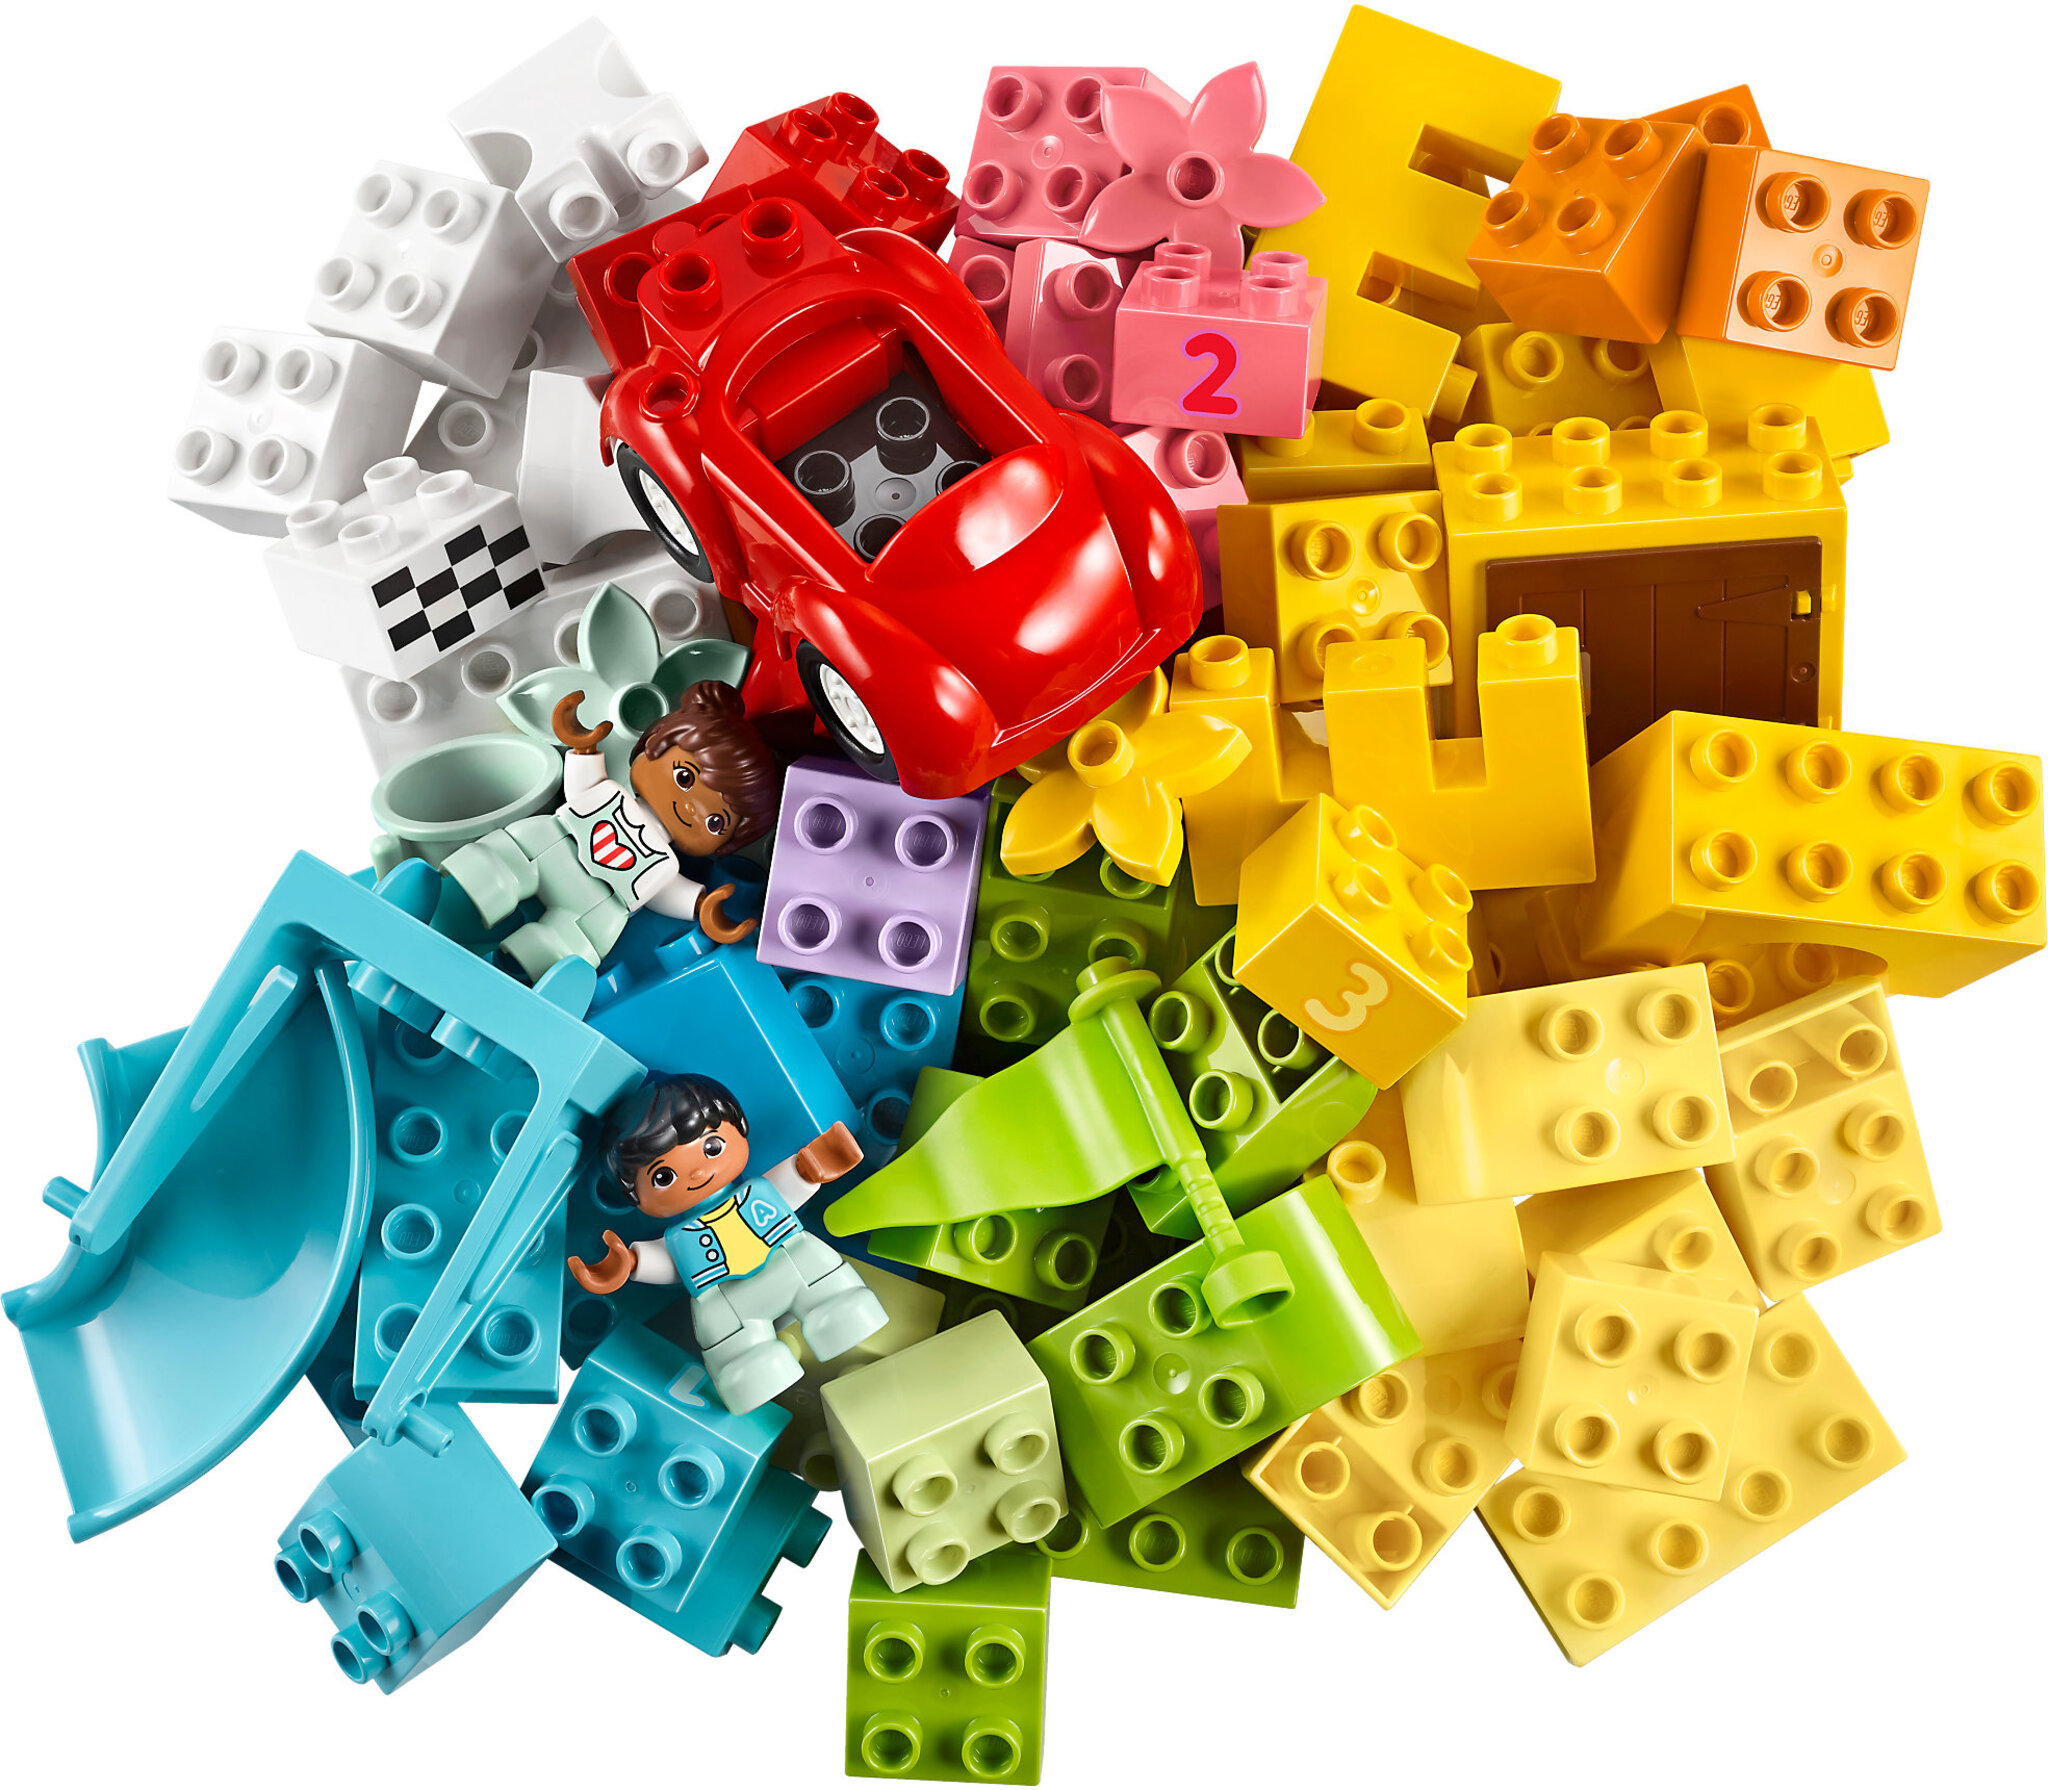 LEGO DUPLO 10909 Classic Scatola Cuore, Primi Mattoncini Colorati da  Costruzione, Giochi Educativi e Creativi per Bambini - LEGO - Duplo - Set  mattoncini - Giocattoli